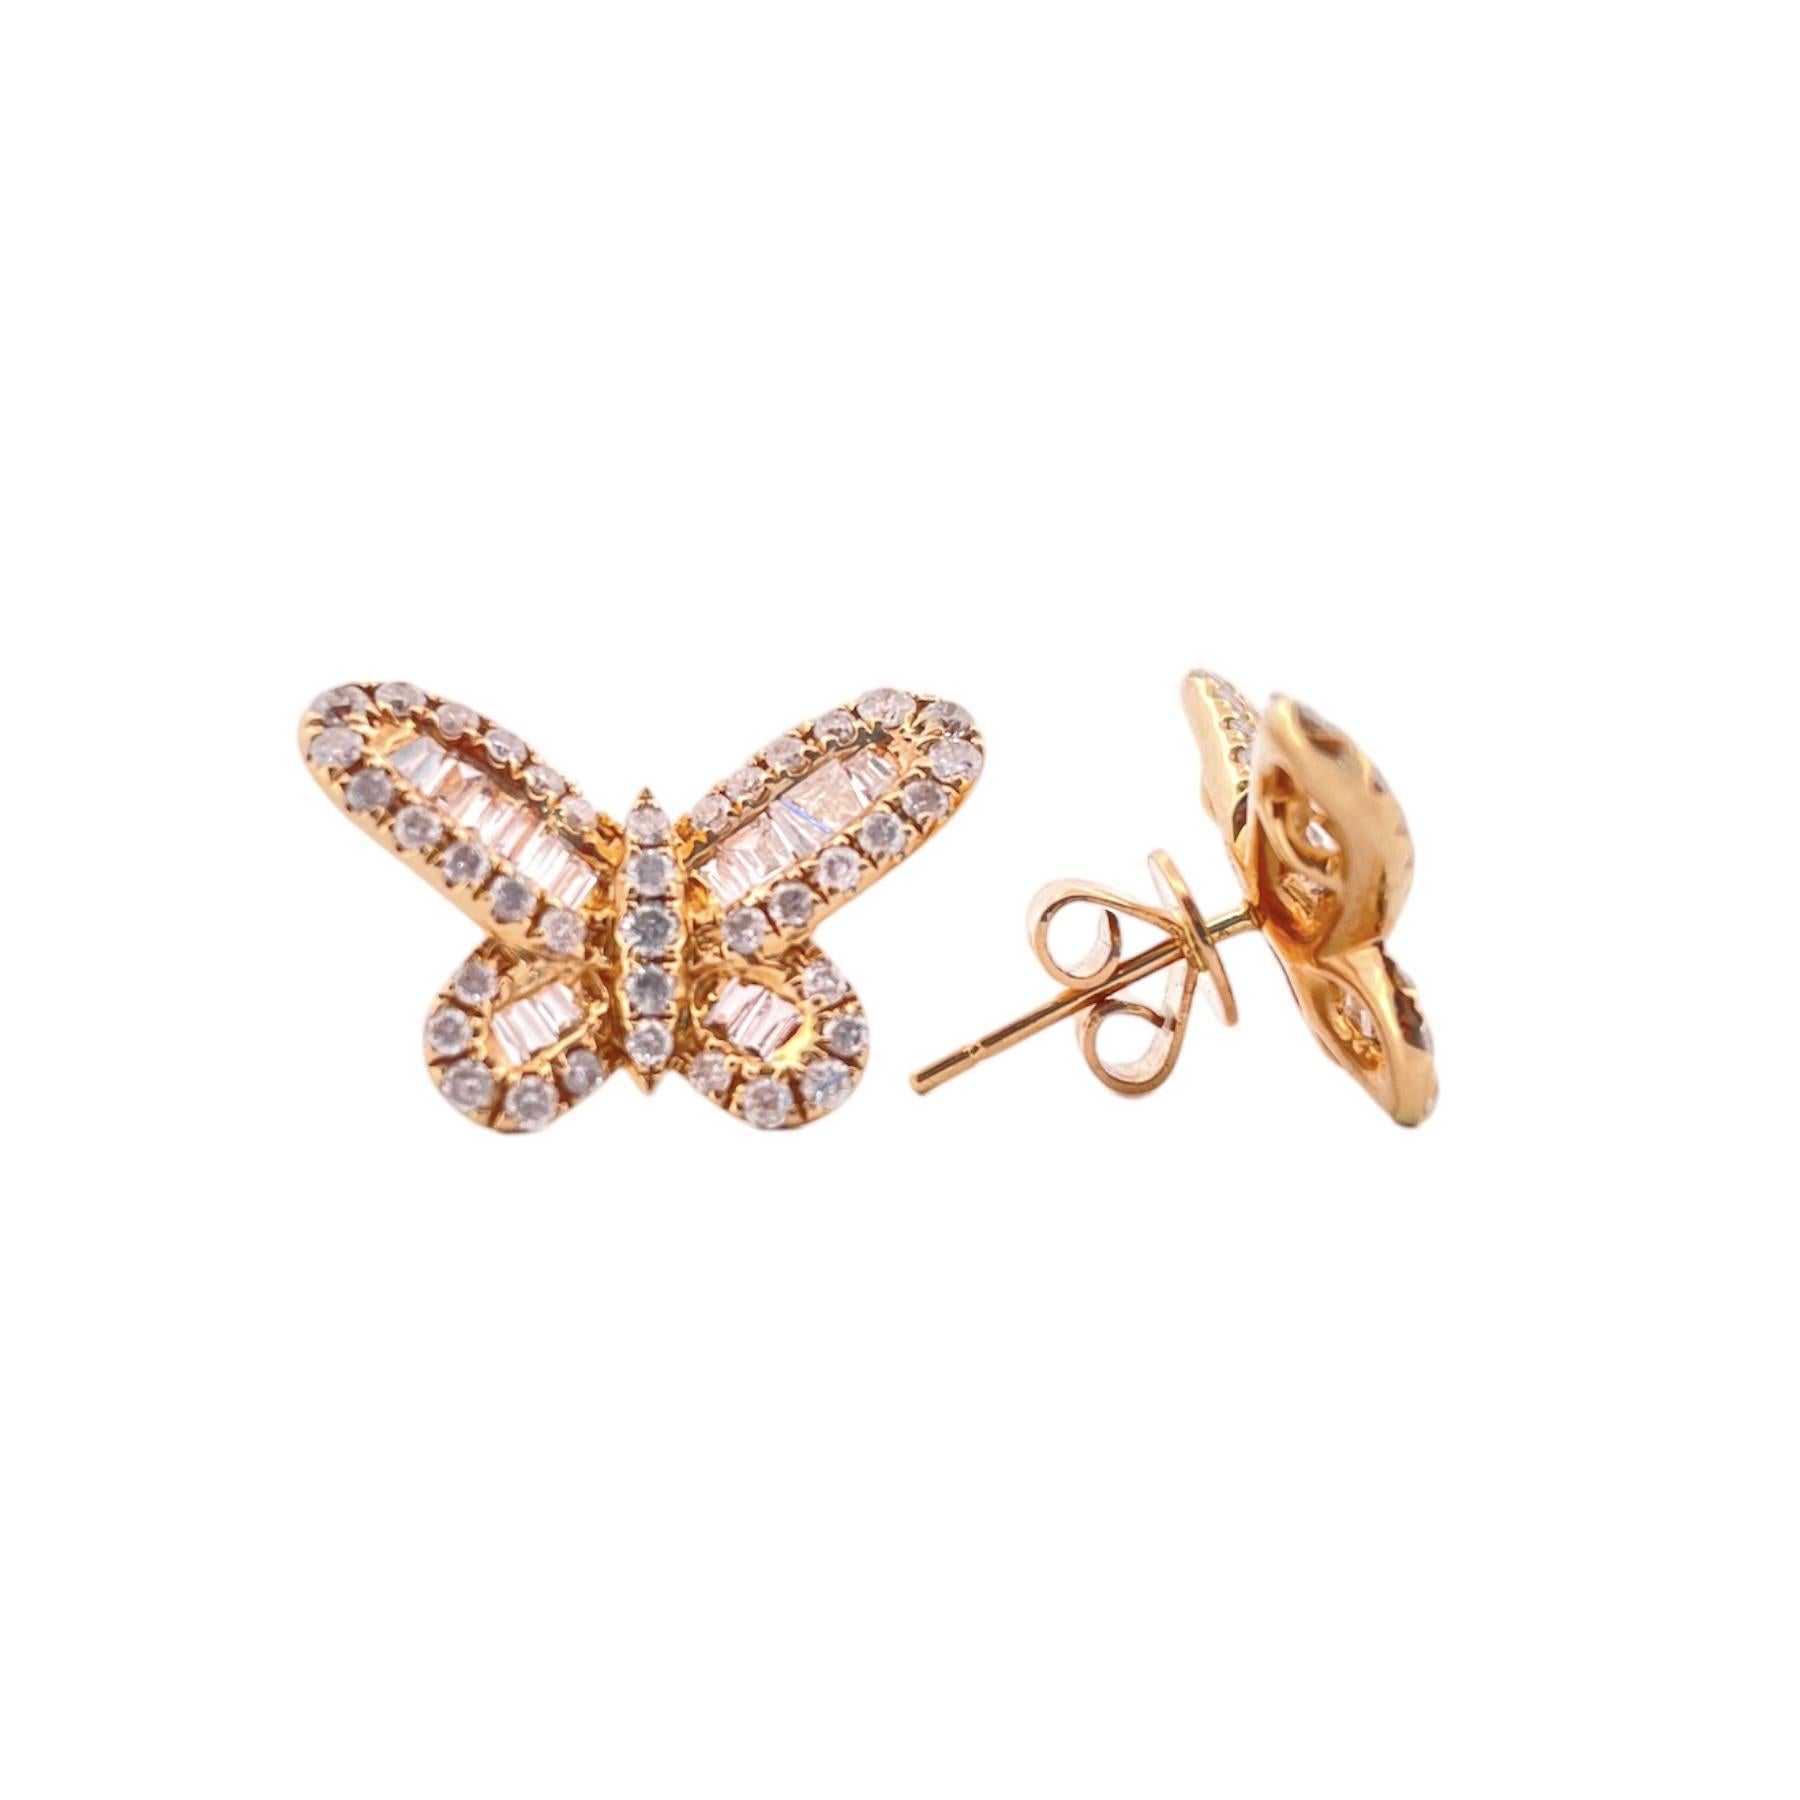 Wunderschöner 14K Gelbgold Diamant Schmetterling Ohrring 
Dieses Stück wiegt 4,9 Gramm, 1,35 Karat runden Brillanten.
Ein Schmetterling, der bereit ist, durch den klaren Himmel zu schweben, ist sowohl elegant als auch anmutig. Diese Ohrringe